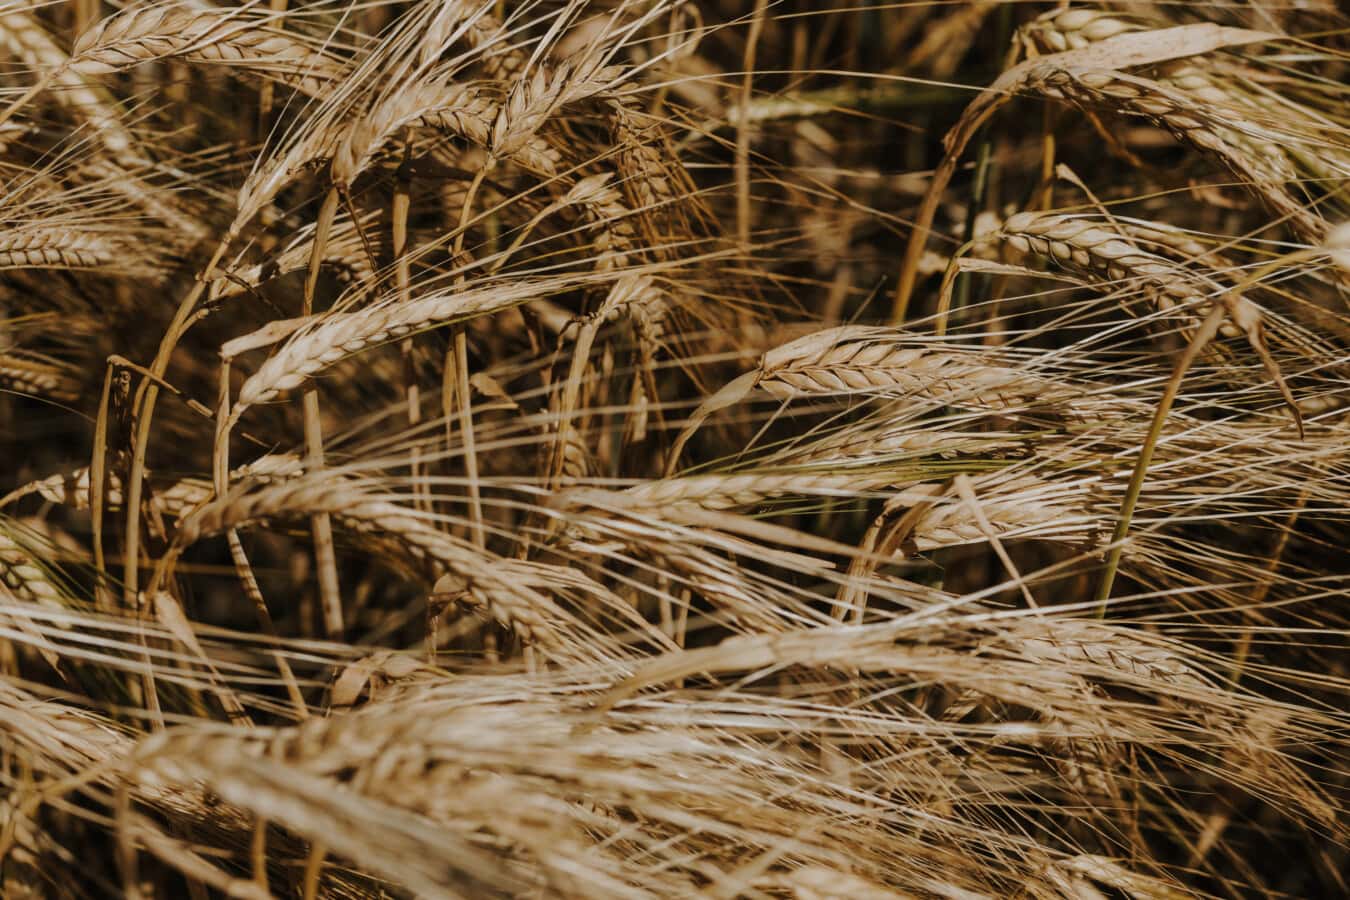 Wheatfield, seminţe, paie, până aproape, grâu, cereale, Sezonul secetos, cereale, vara, pâine